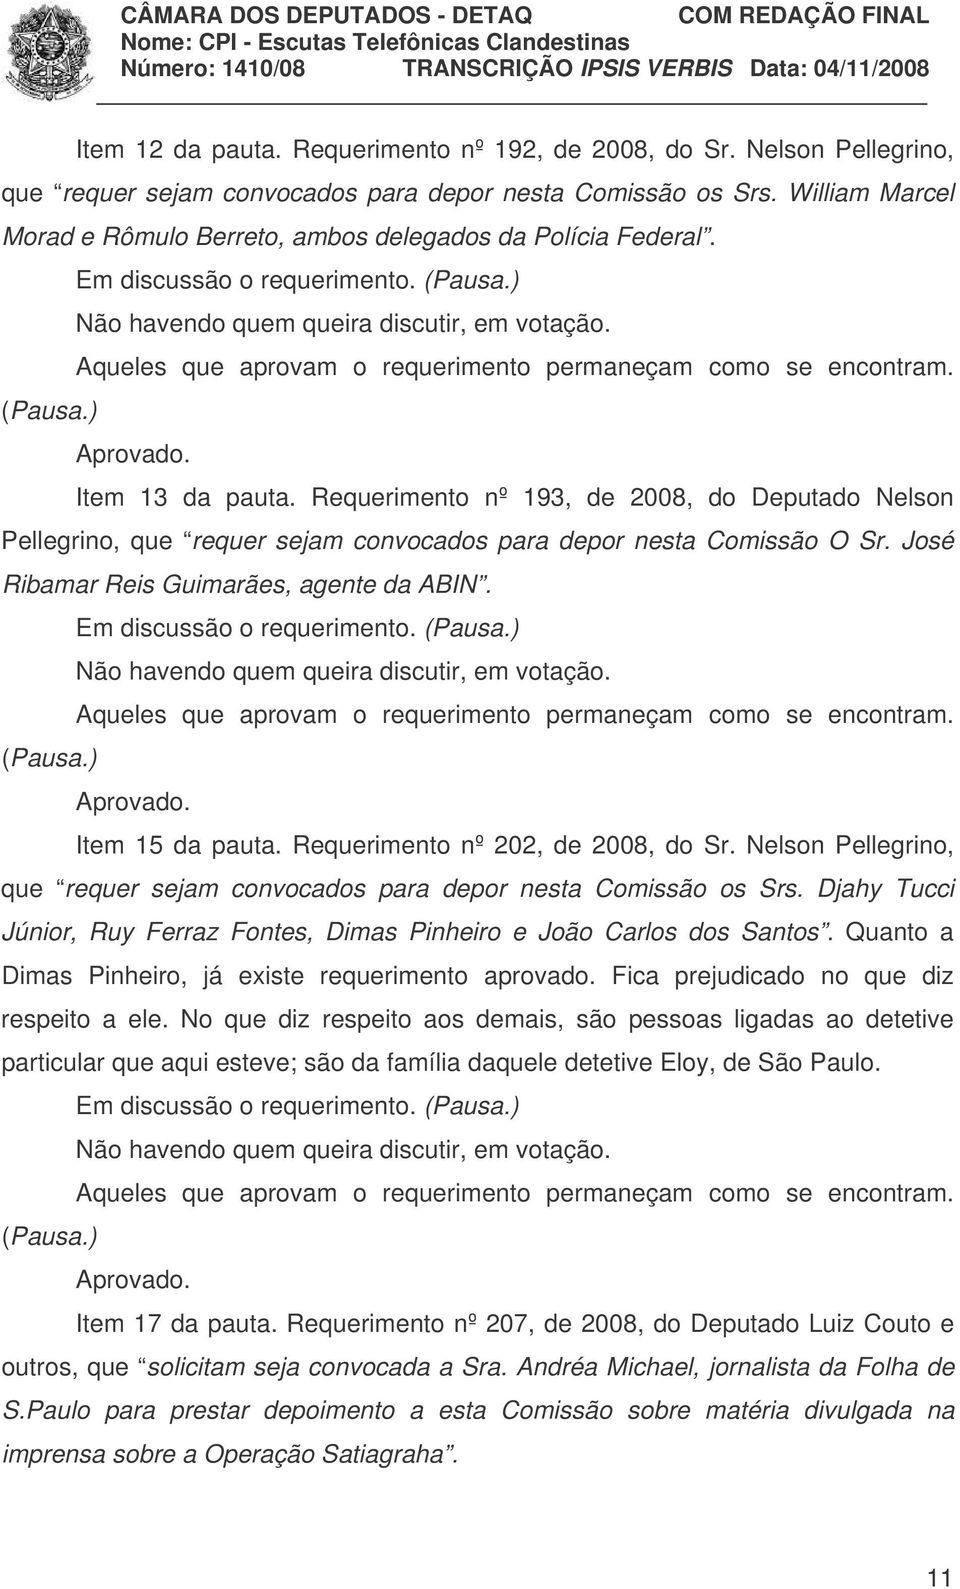 Requerimento nº 193, de 2008, do Deputado Nelson Pellegrino, que requer sejam convocados para depor nesta Comissão O Sr. José Ribamar Reis Guimarães, agente da ABIN. Em discussão o requerimento.